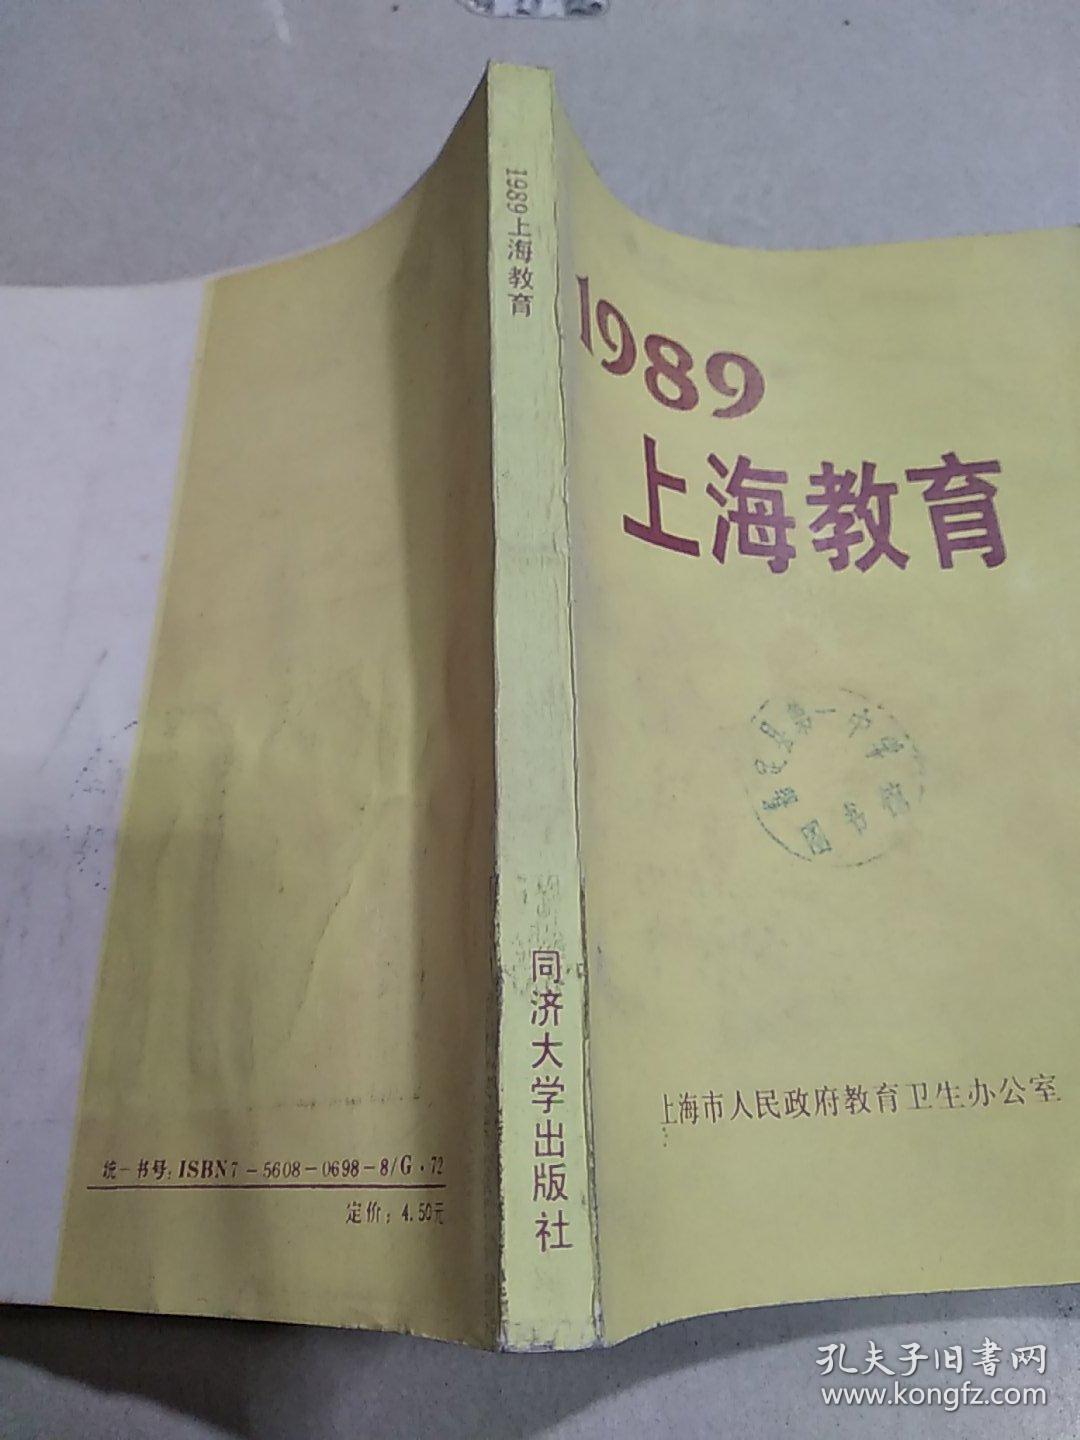 1989上海教育